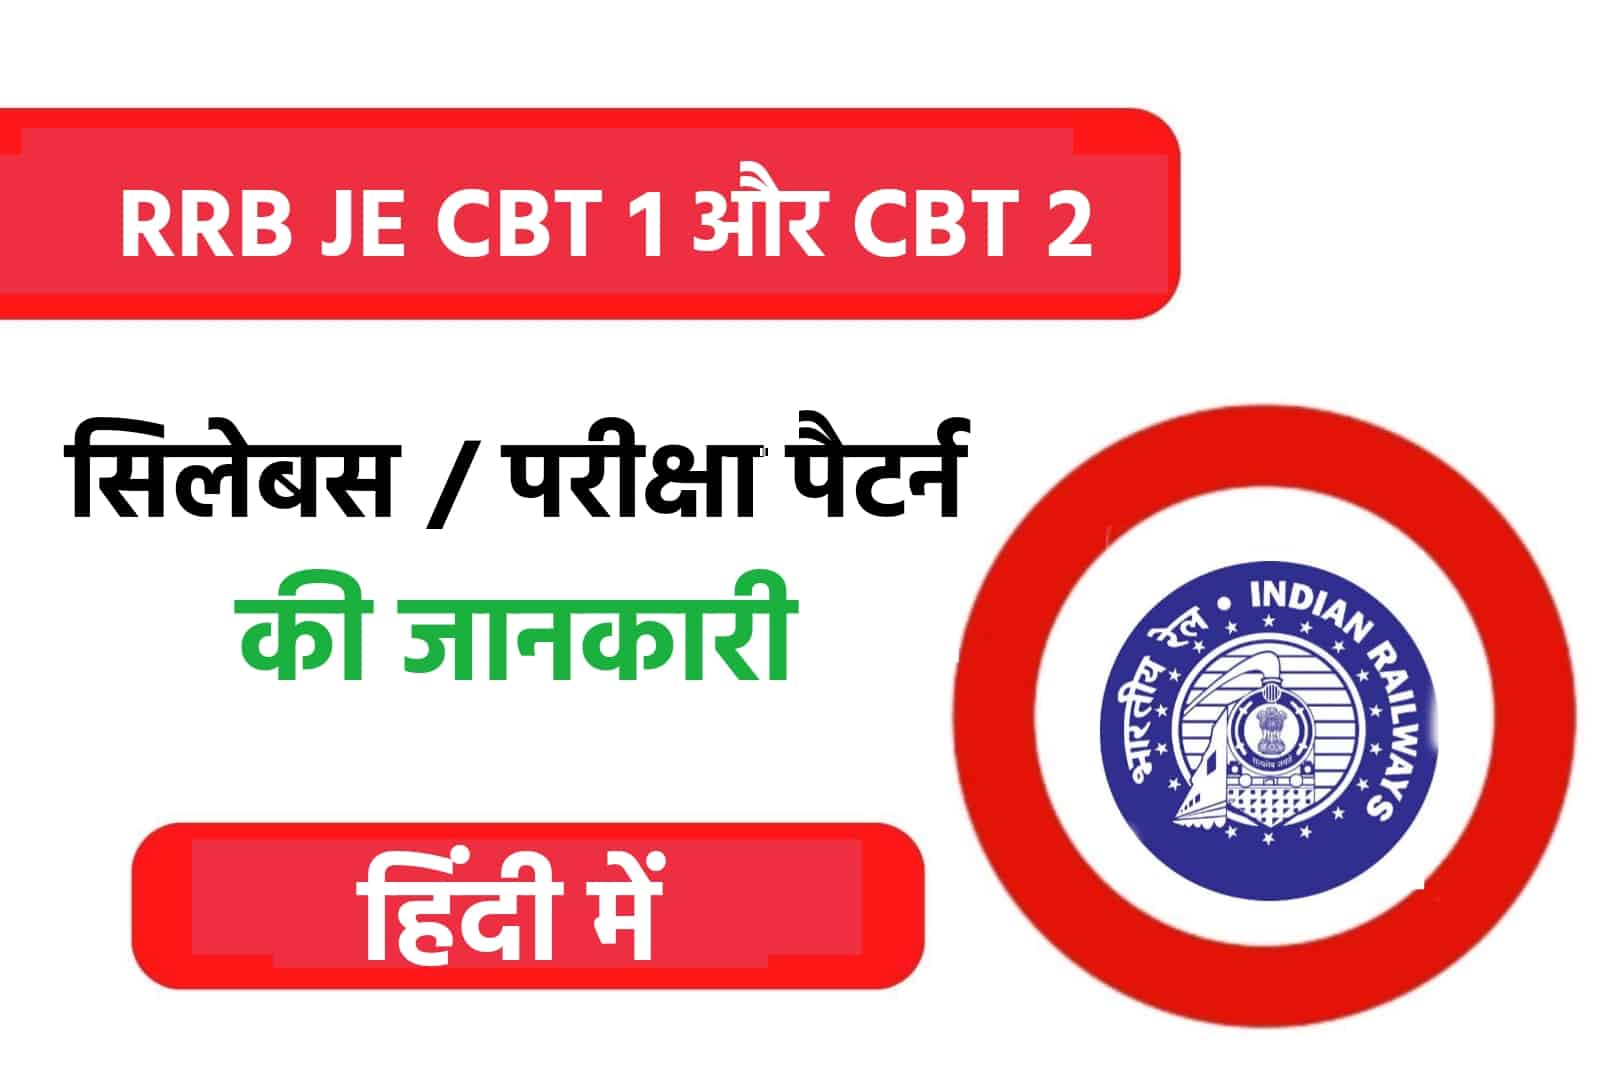 RRB JE Syllabus In Hindi | CBT- 1 & CBT- 2 सिलेबस और परीक्षा पैटर्न